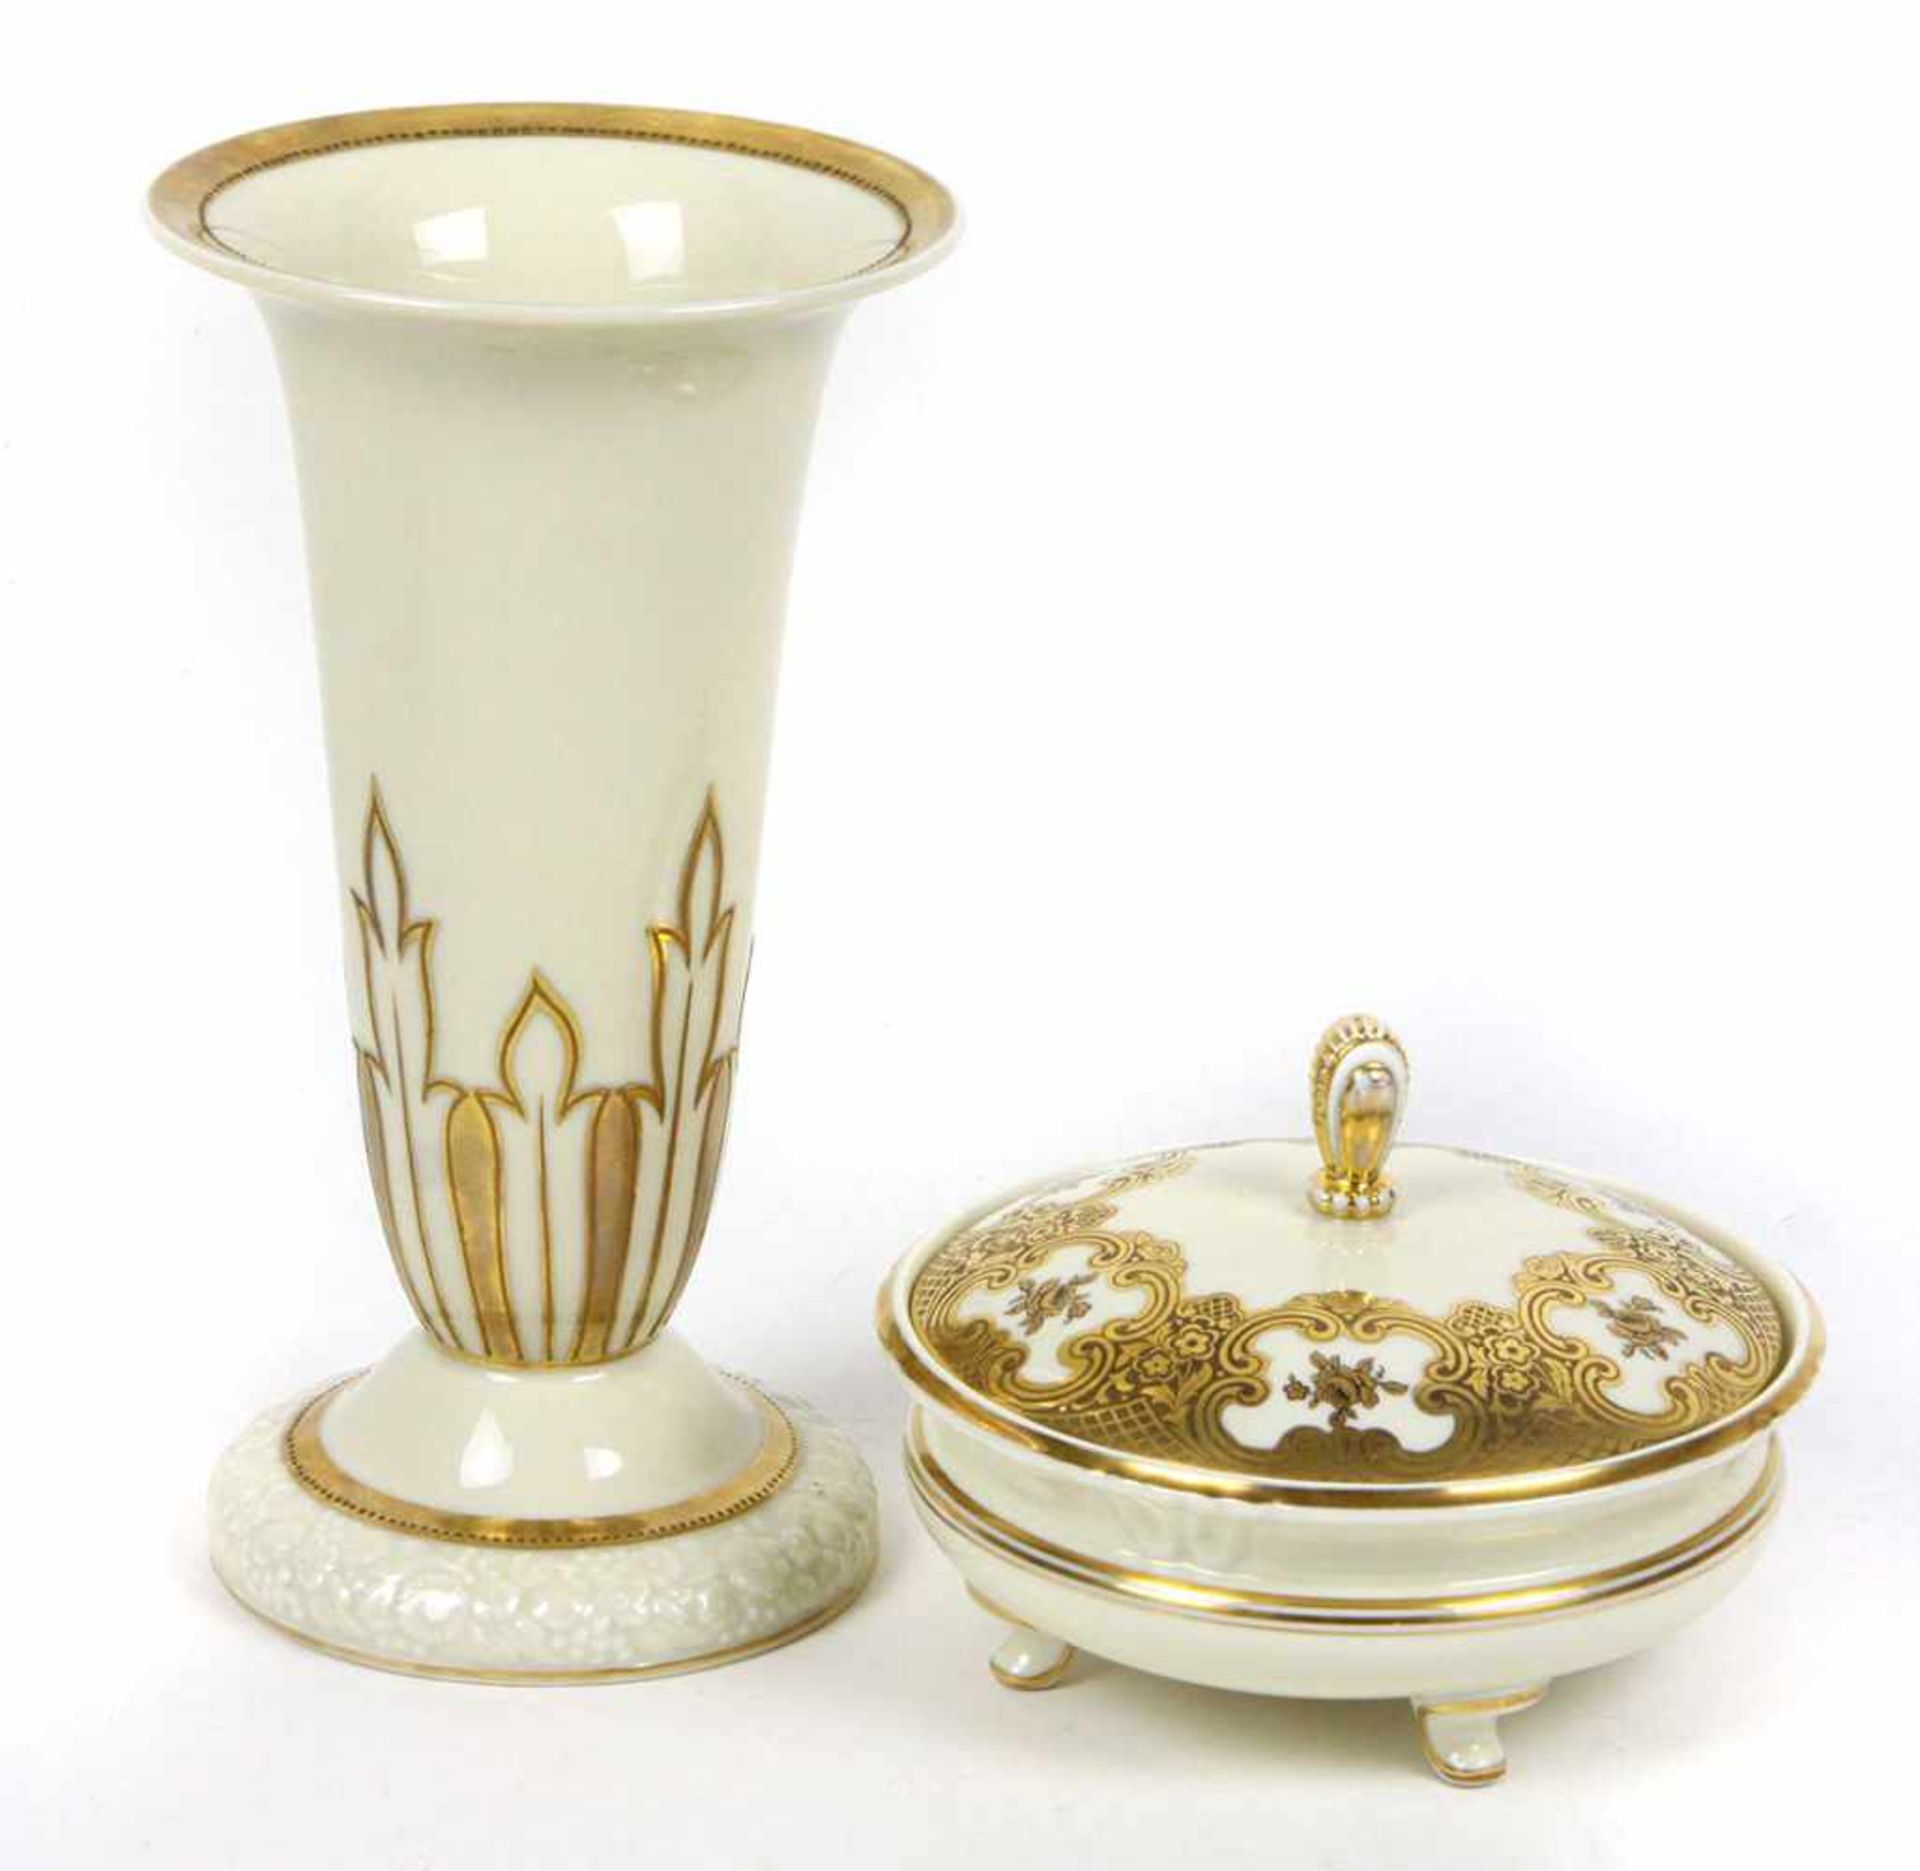 Vase und Deckeldose Goldmalereielfenbeinfarbiges Porzellan, Manufakturmarke PMR Jäger Bavaria u.